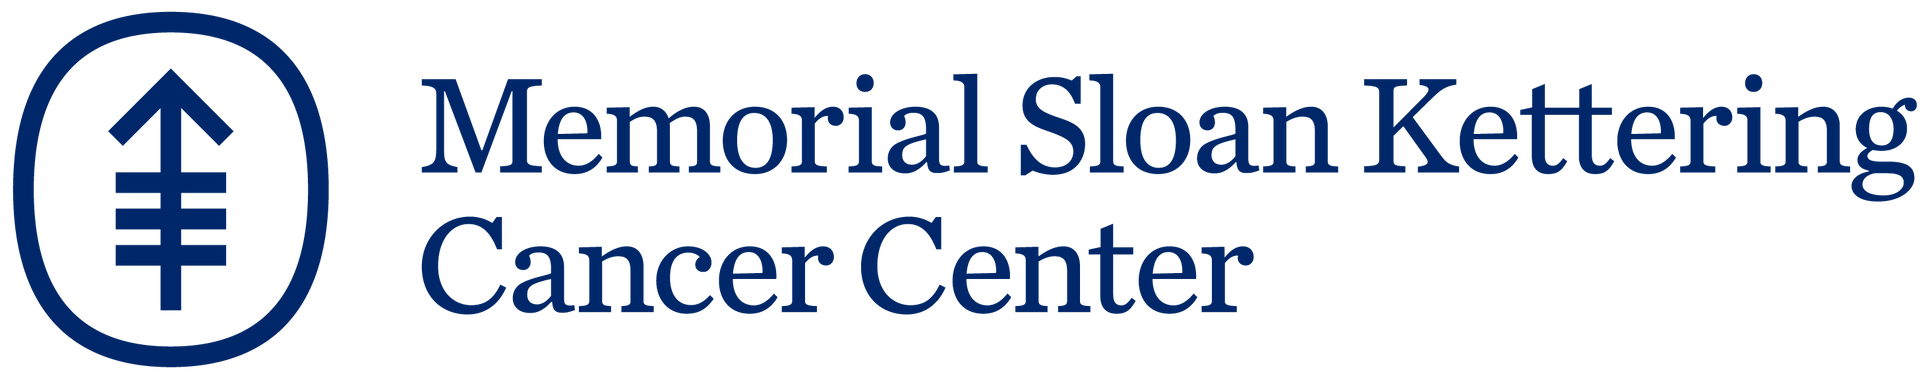 logo for Memorial Sloan Kettering Cancer Center